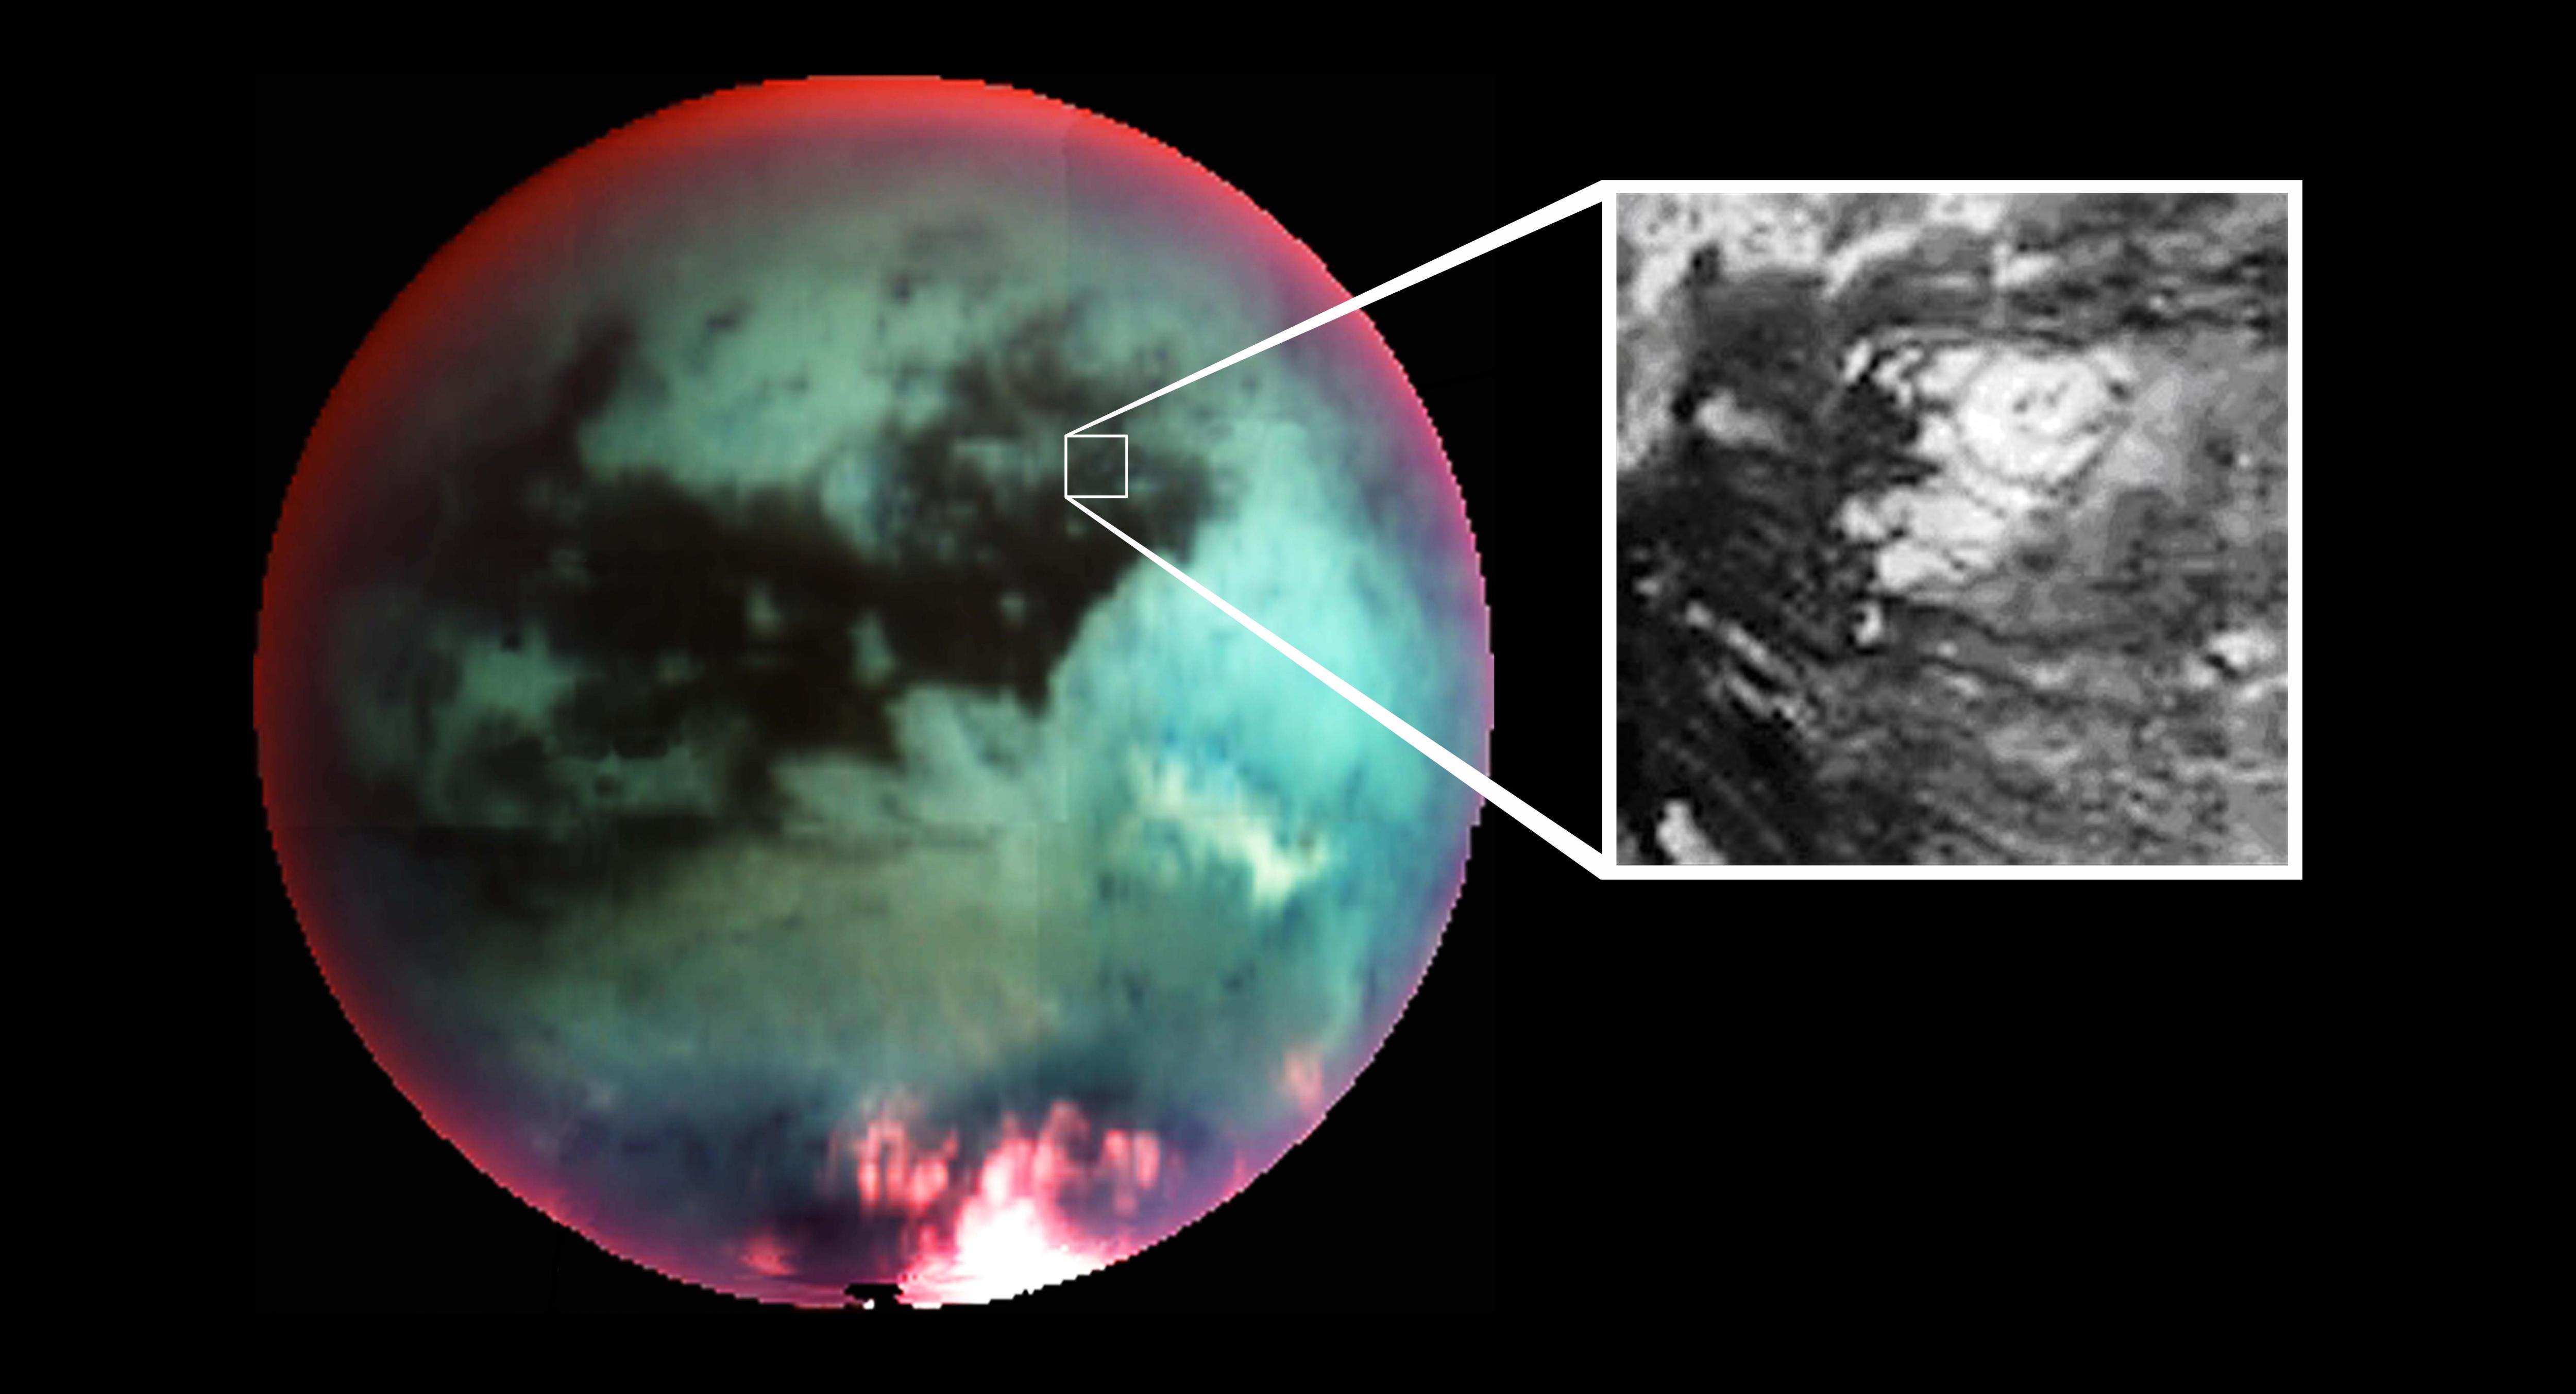 Вышло официальное заявление NASA: последние снимки Титана произвели сенсацию